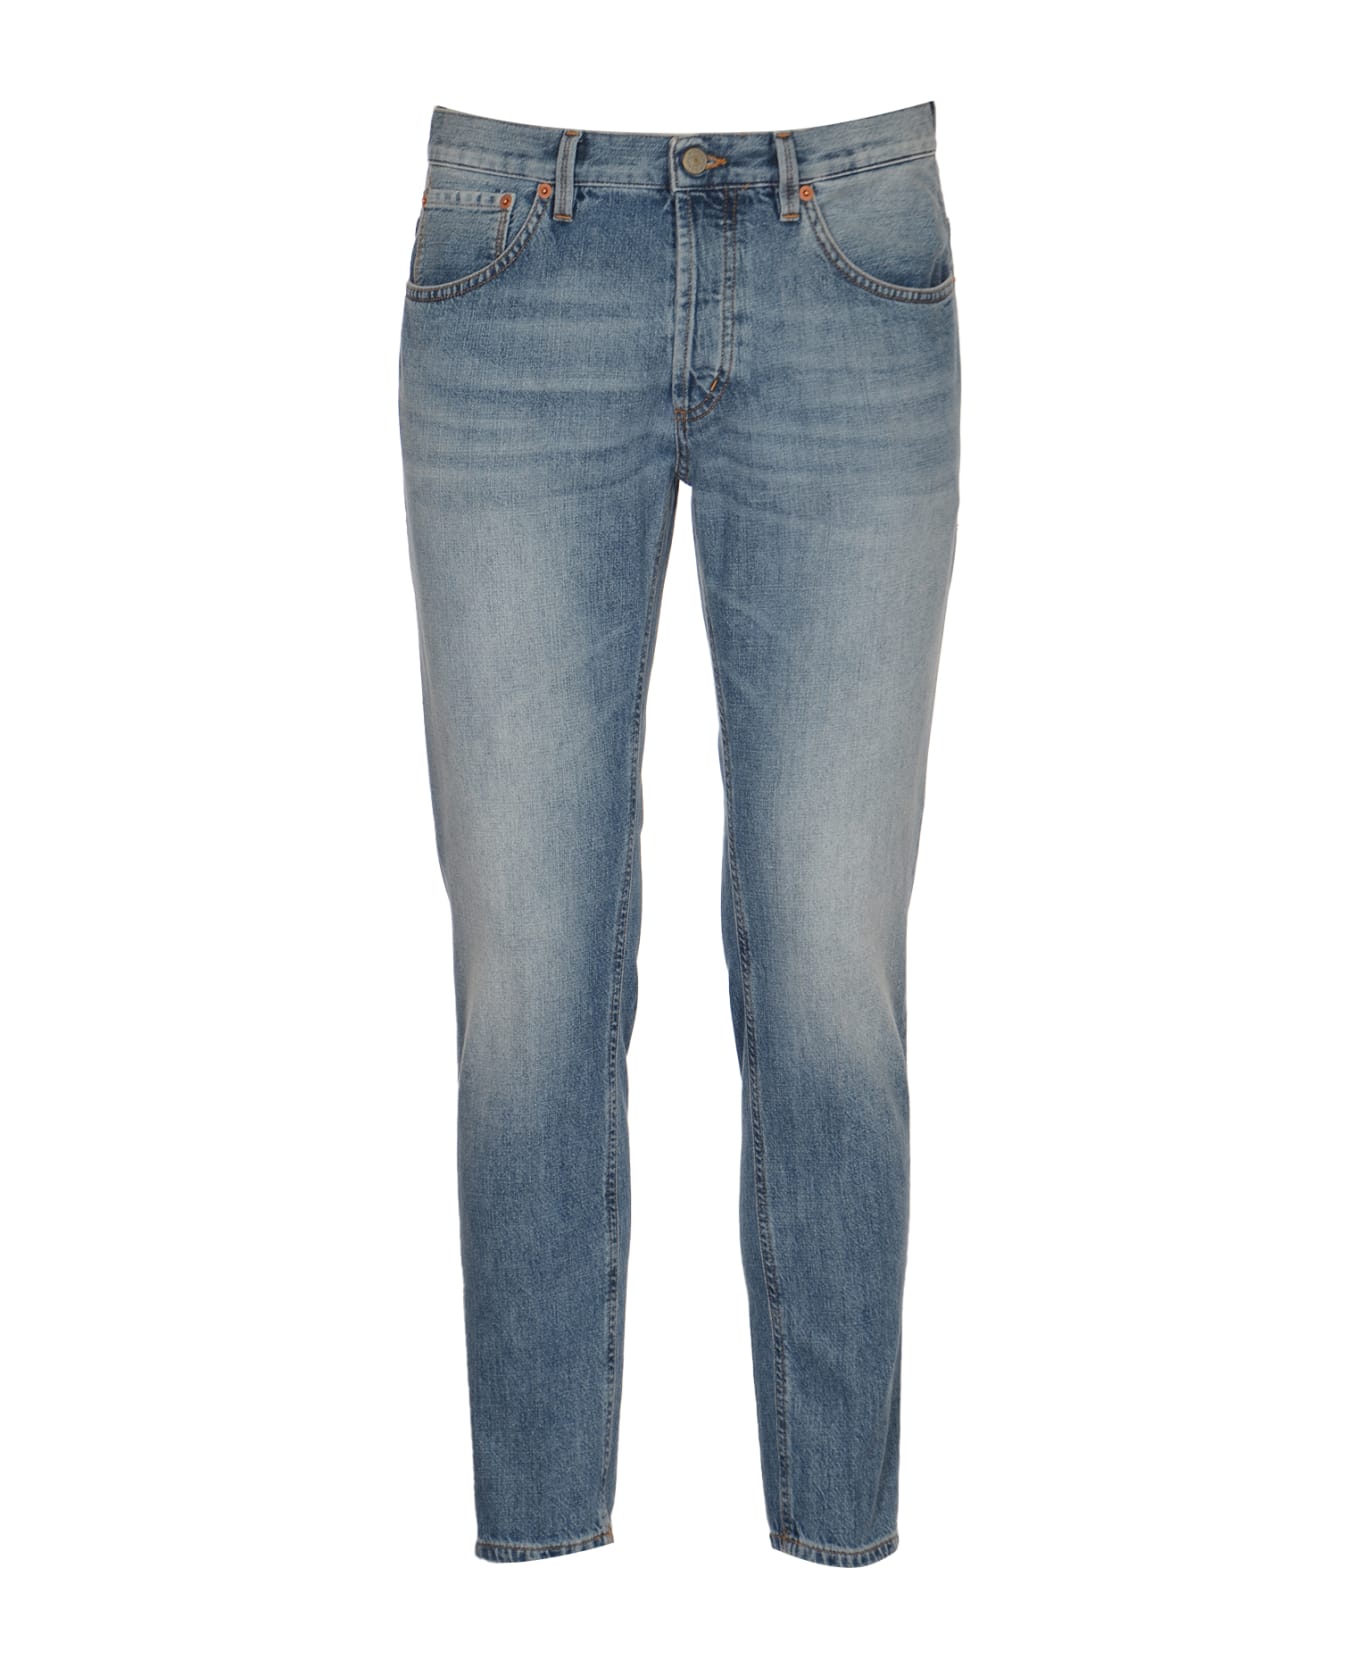 Dondup Skinny Fit Jeans - DENIM BLUE